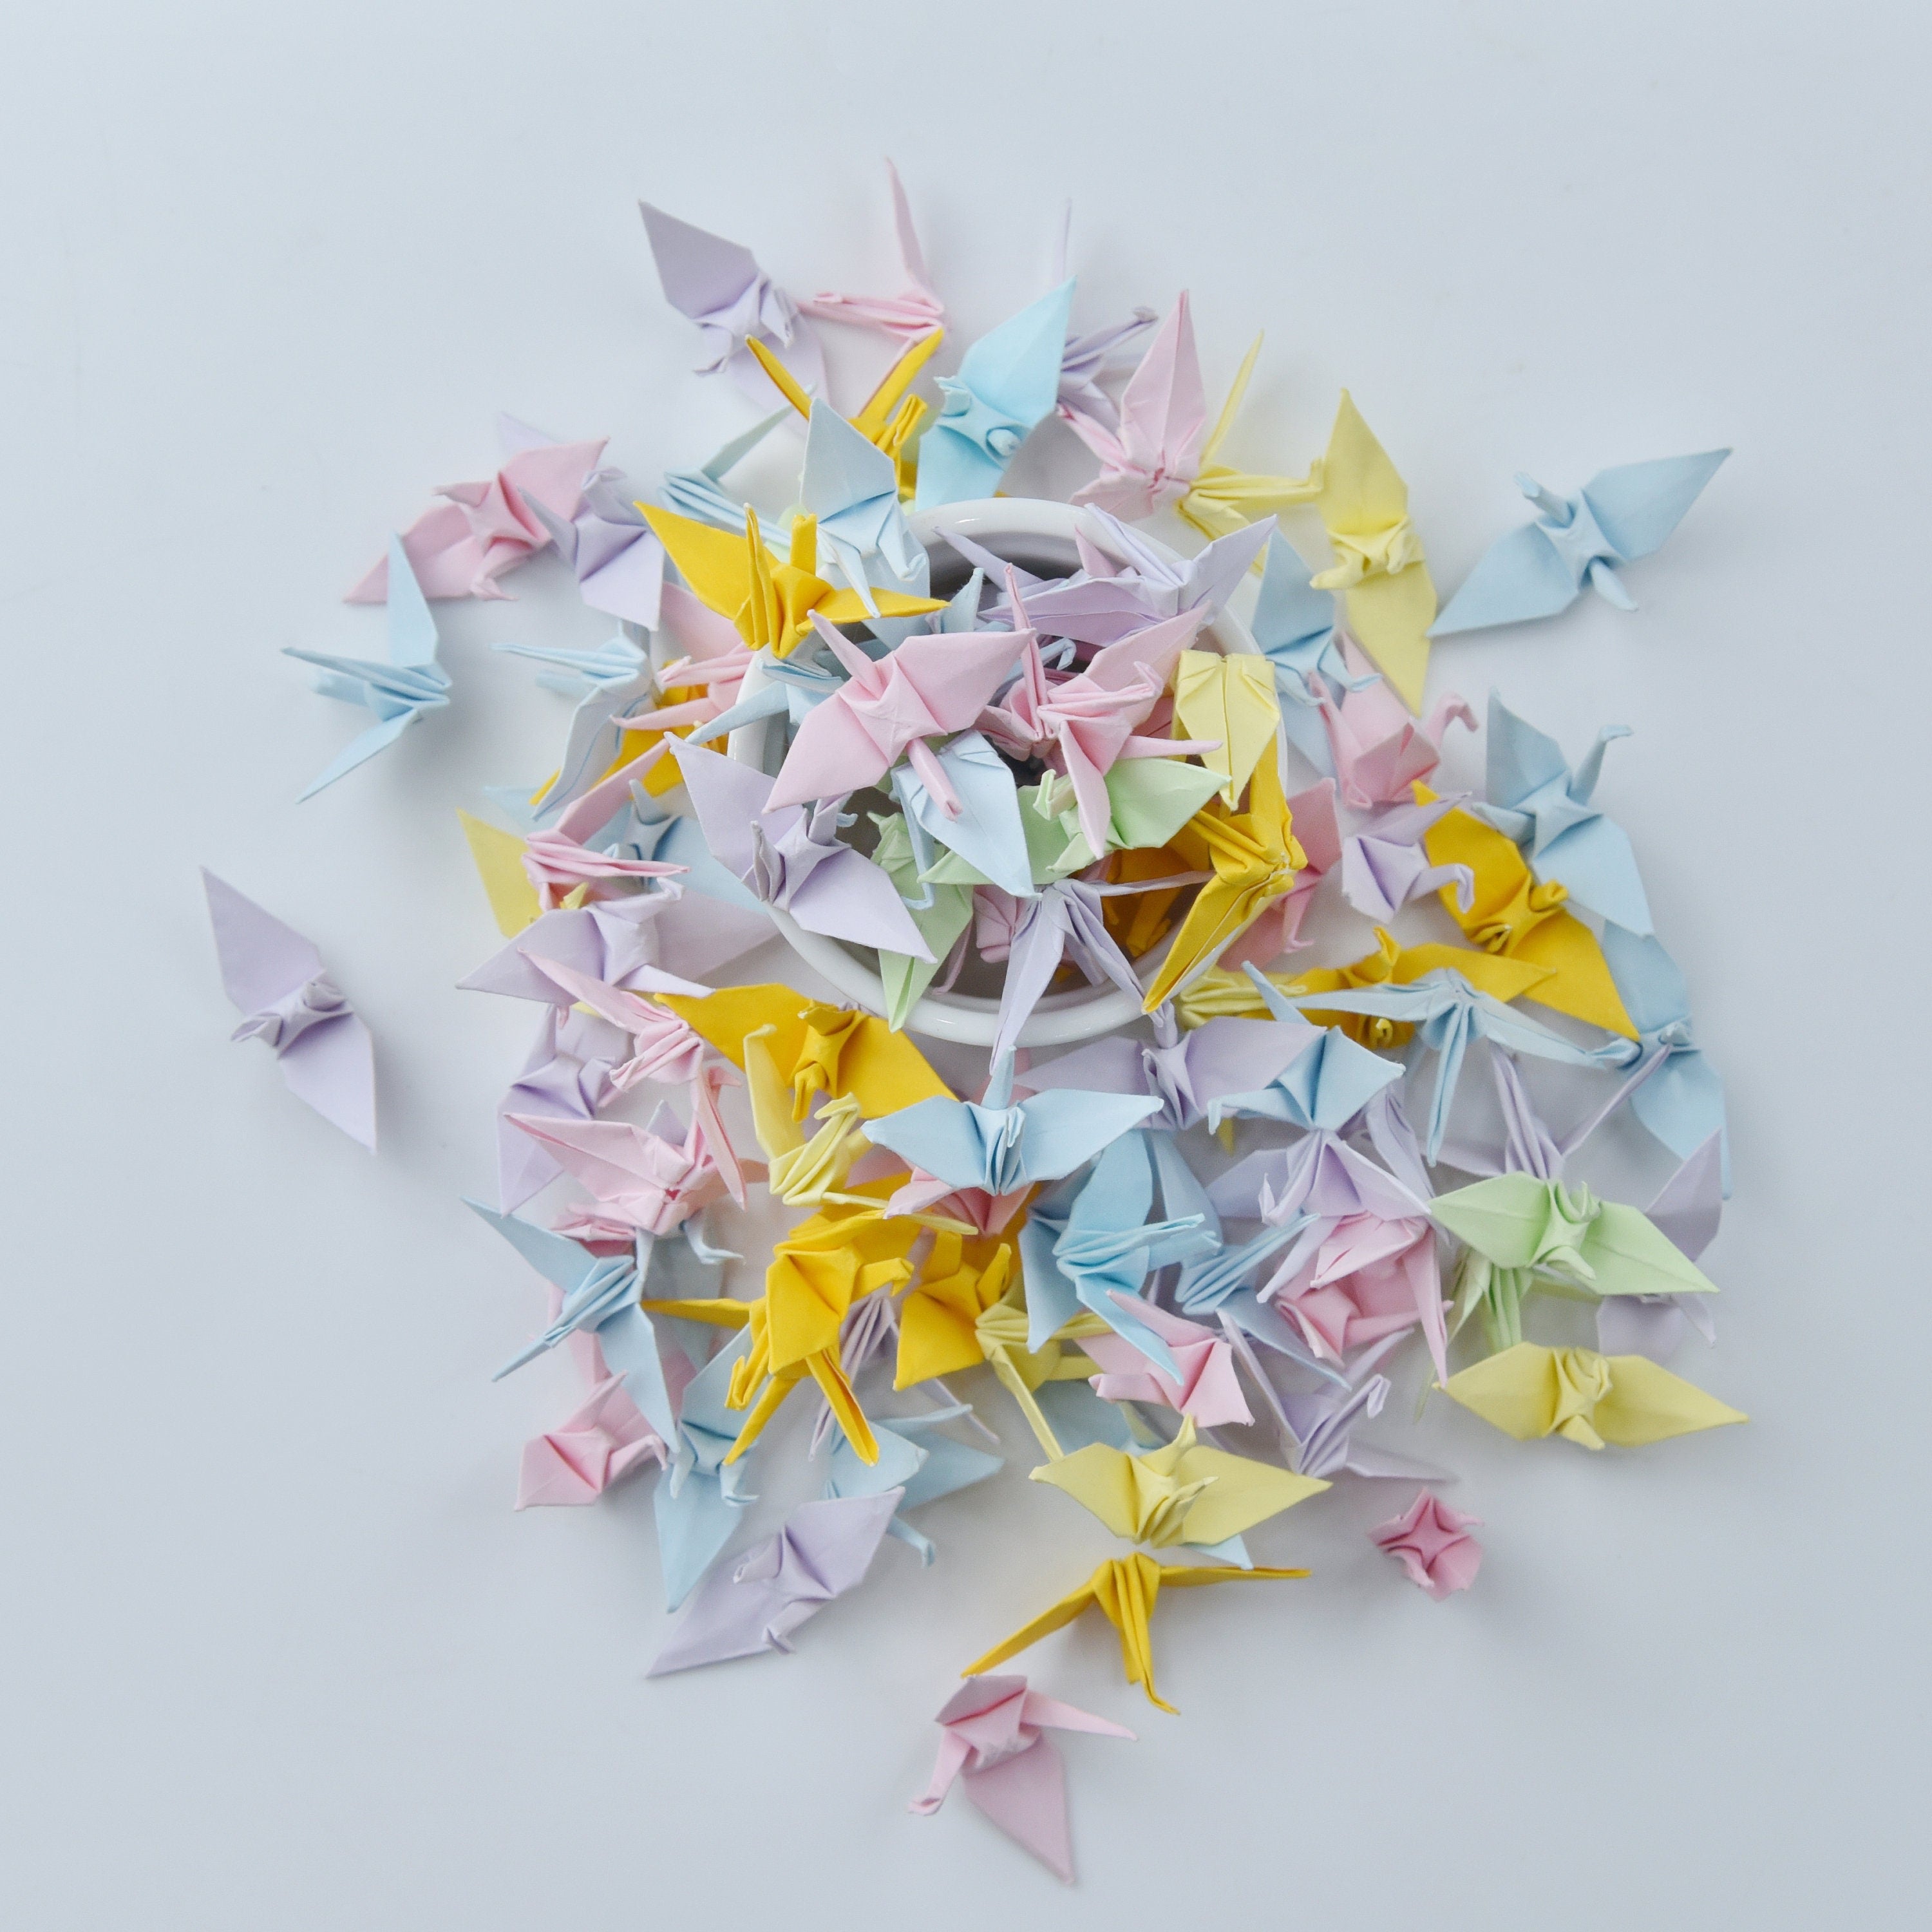 100 gru di carta origami in colori misti - 3,81 cm (1,5 pollici) - Origami giapponesi - Regalo di nozze, Decorazione, Sfondo di nozze